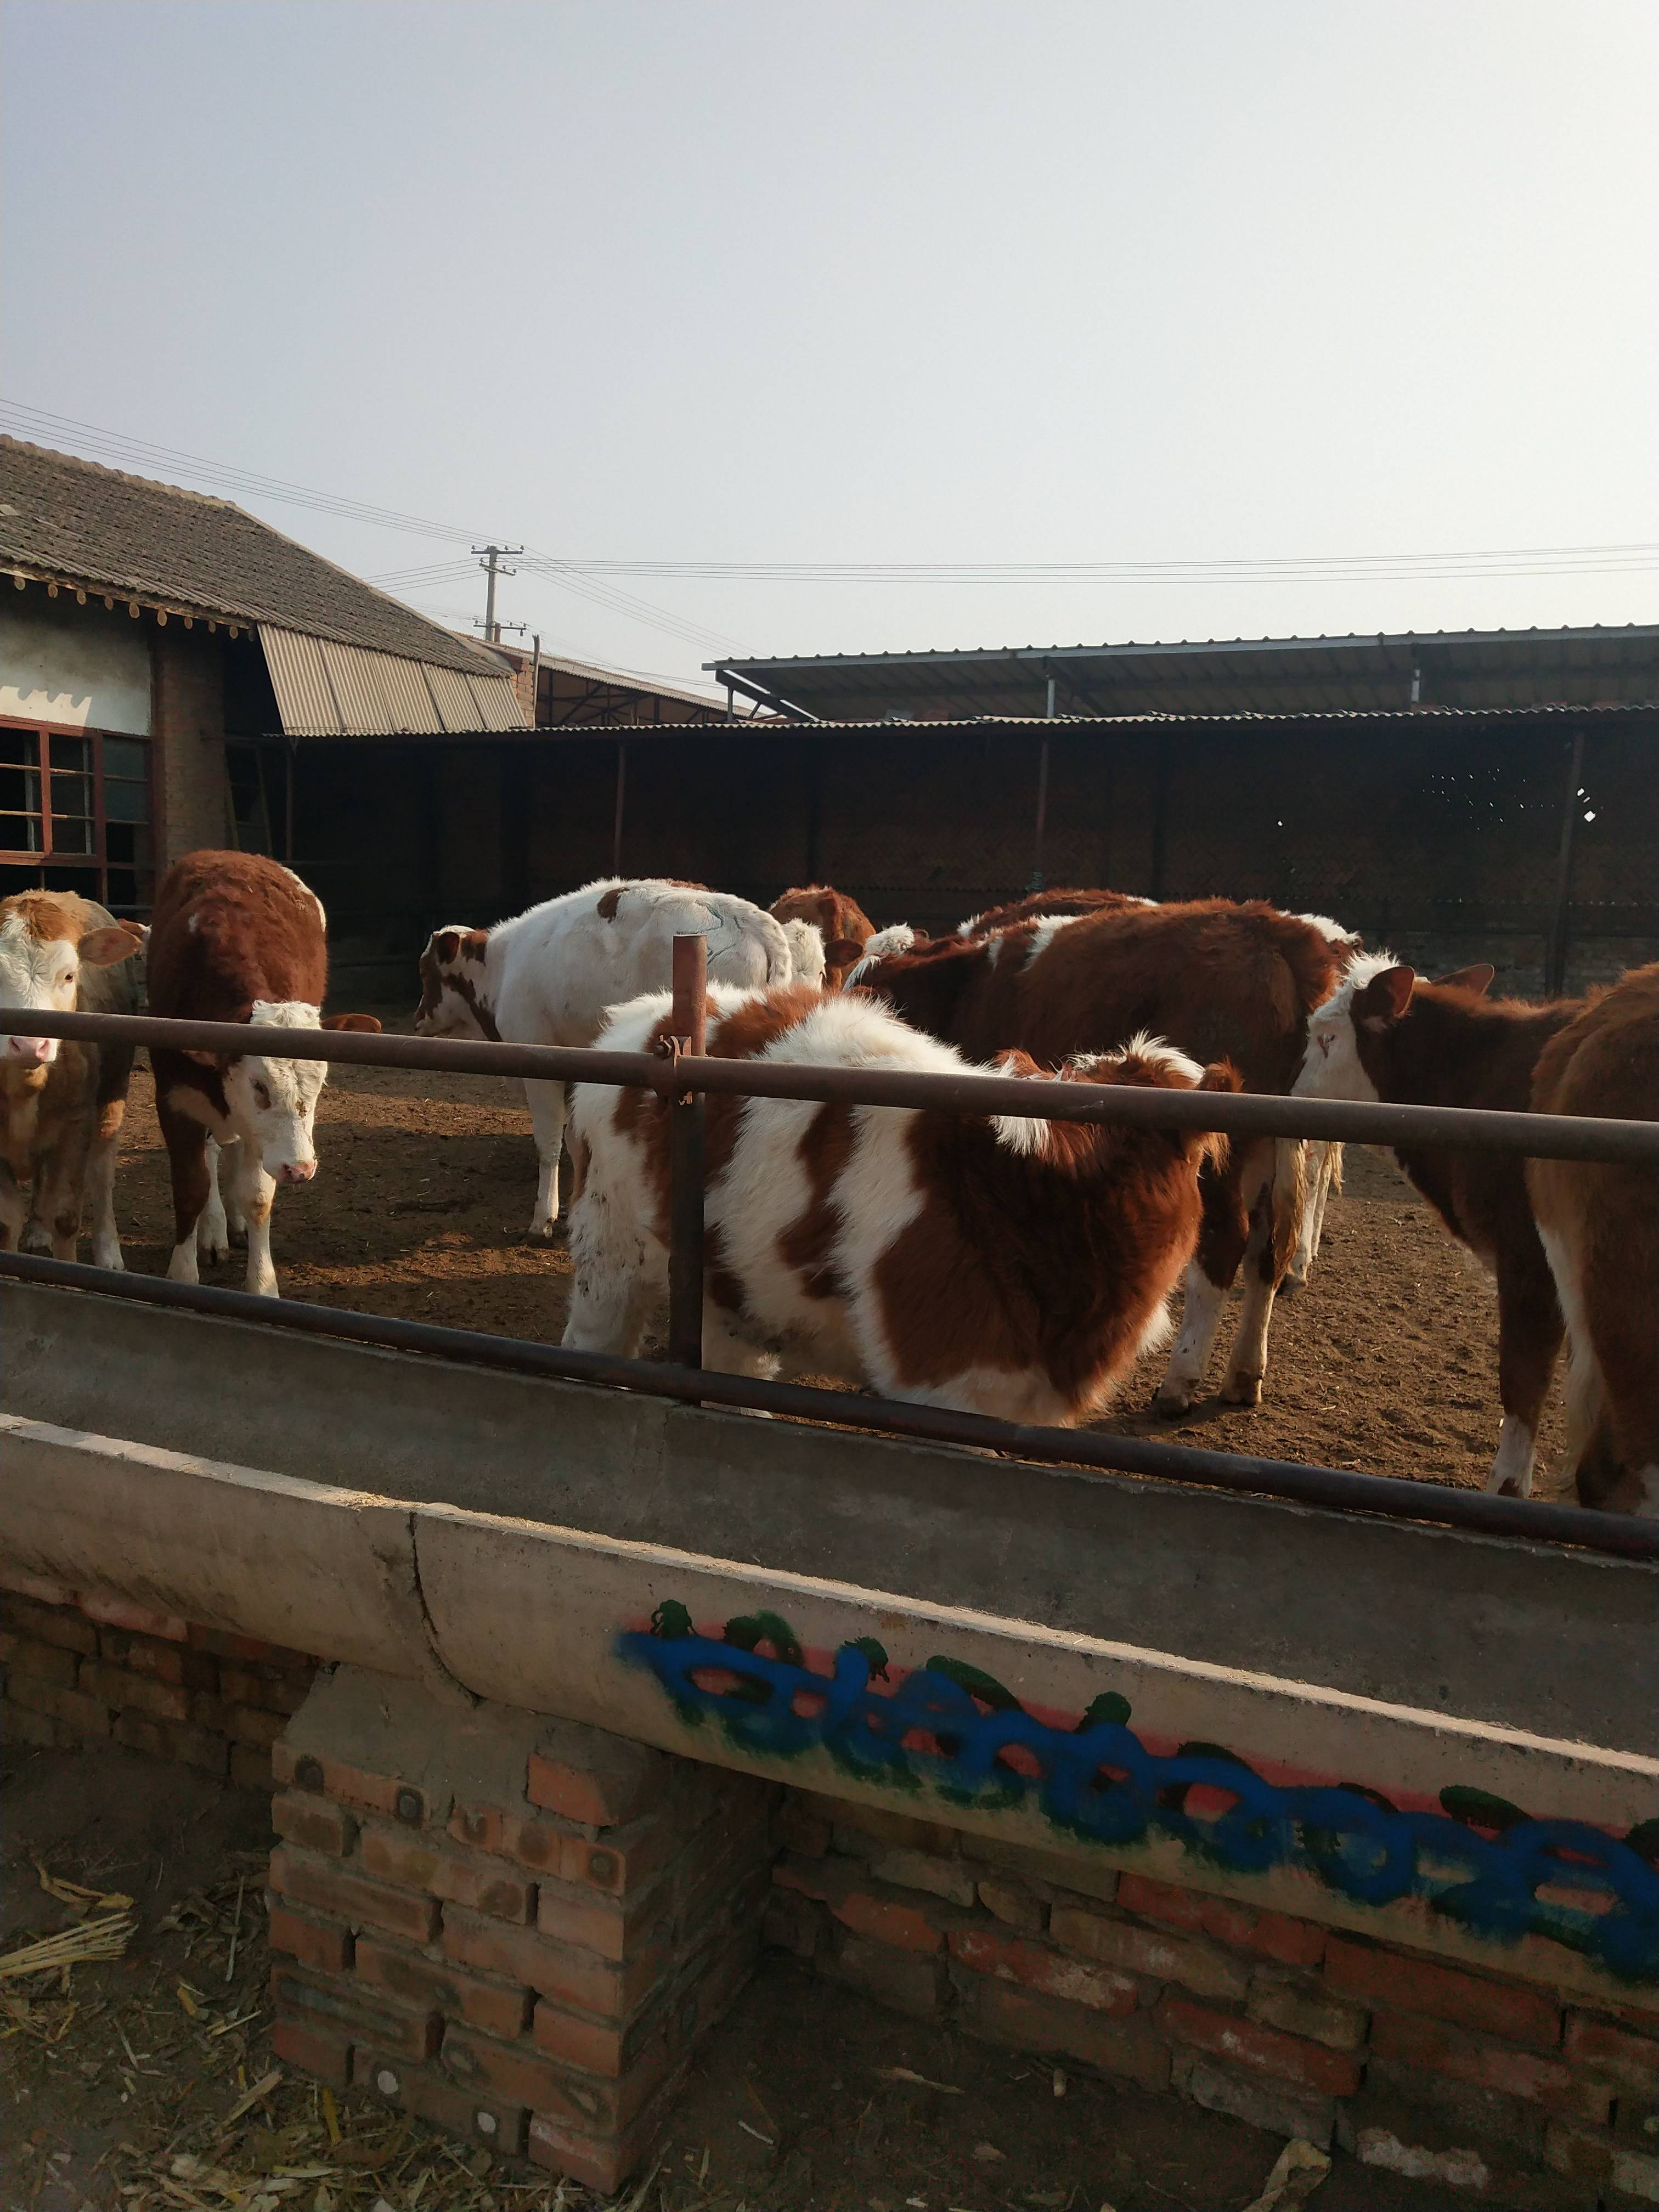 晋红养殖场常年对外出售各种肉牛犊，有要的老板联系15635051422微信同步。